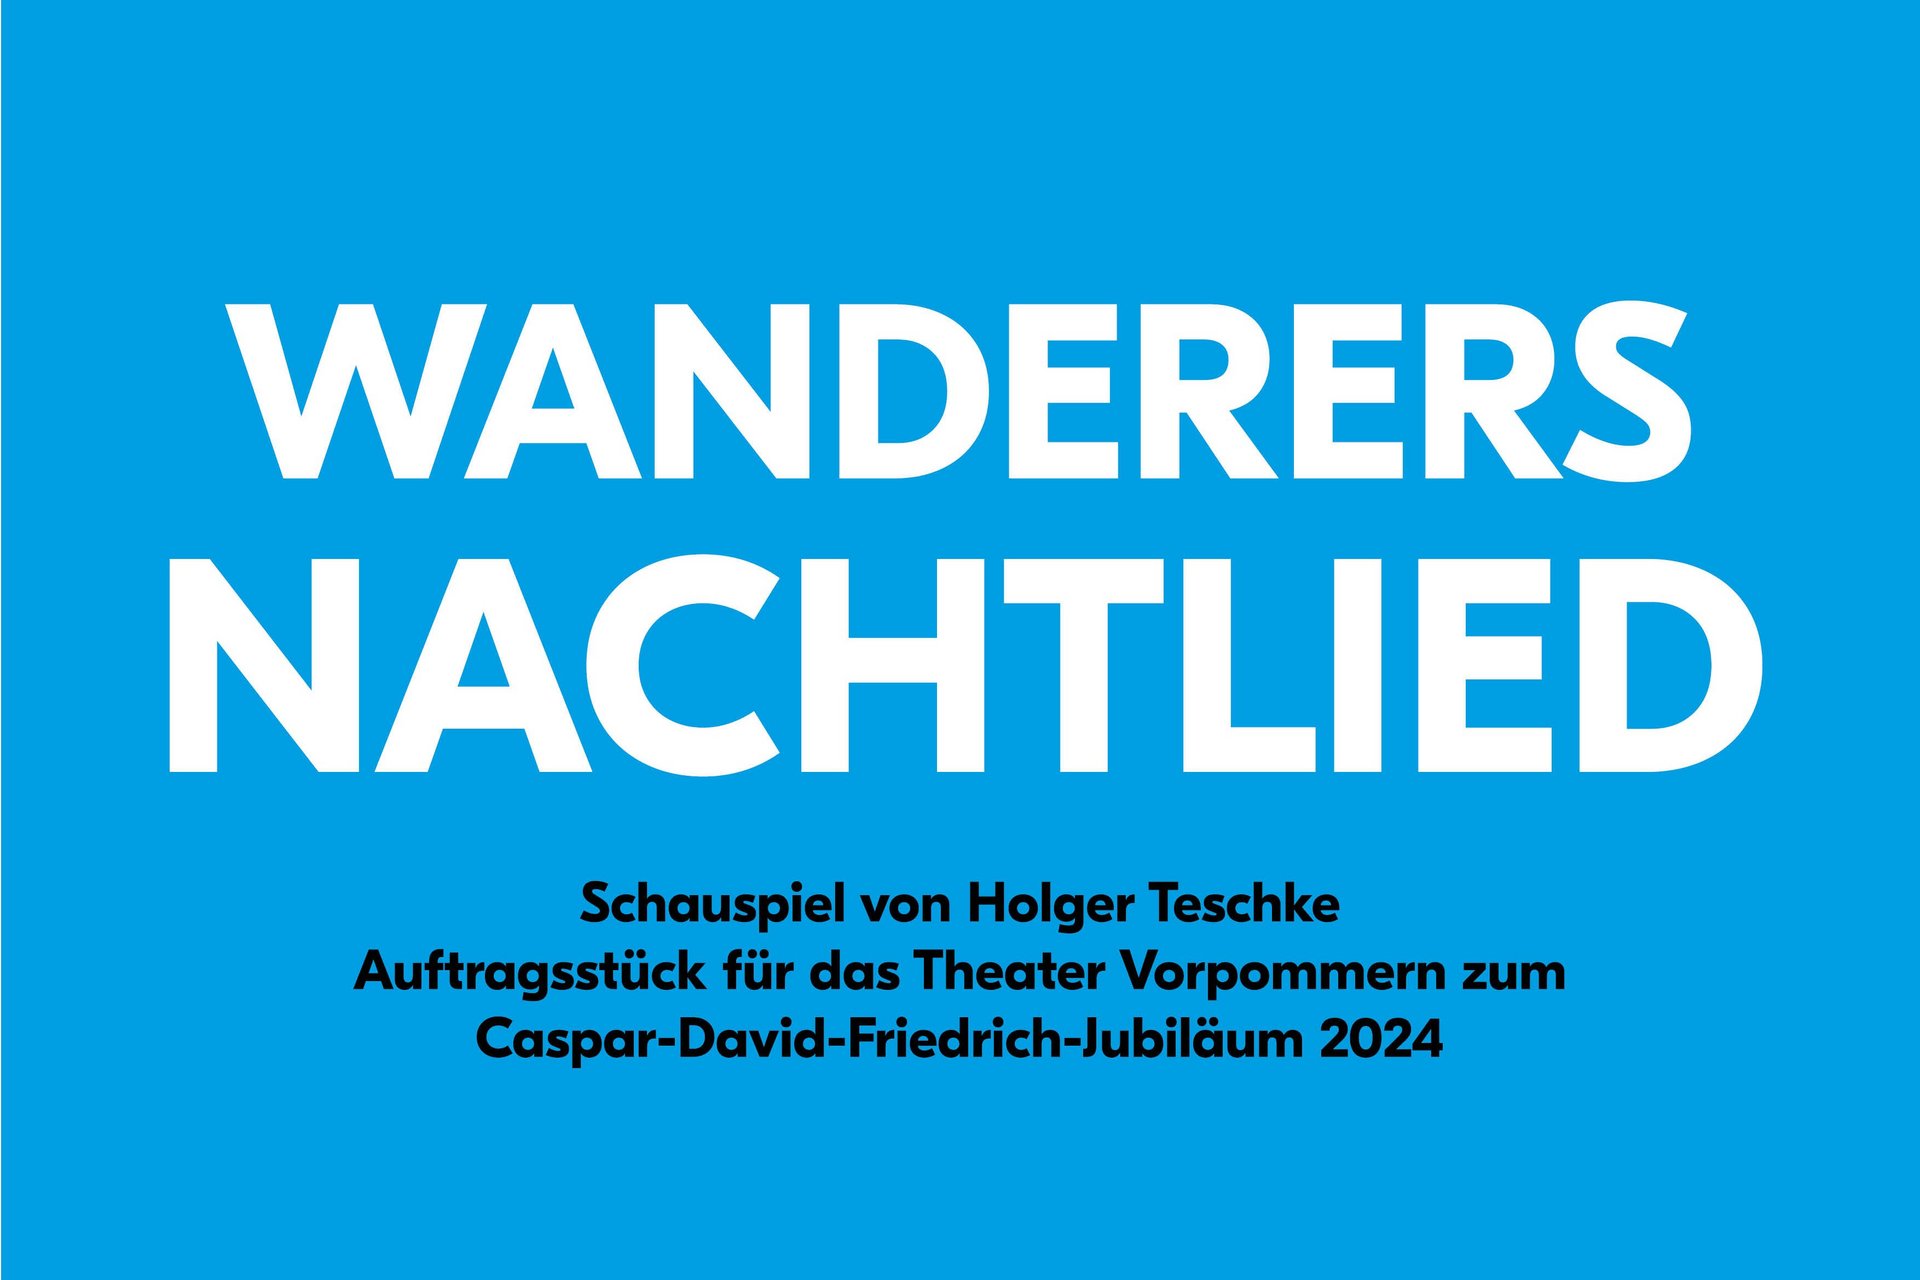 Theaterplakat: Theater Vorpommern, Wanderers Nachtlied, Schauspiel von Holger Teschke, Auftragsstück für das Theater Vorpommern zum Caspar-David-Friedrich-Jubiläum 2024